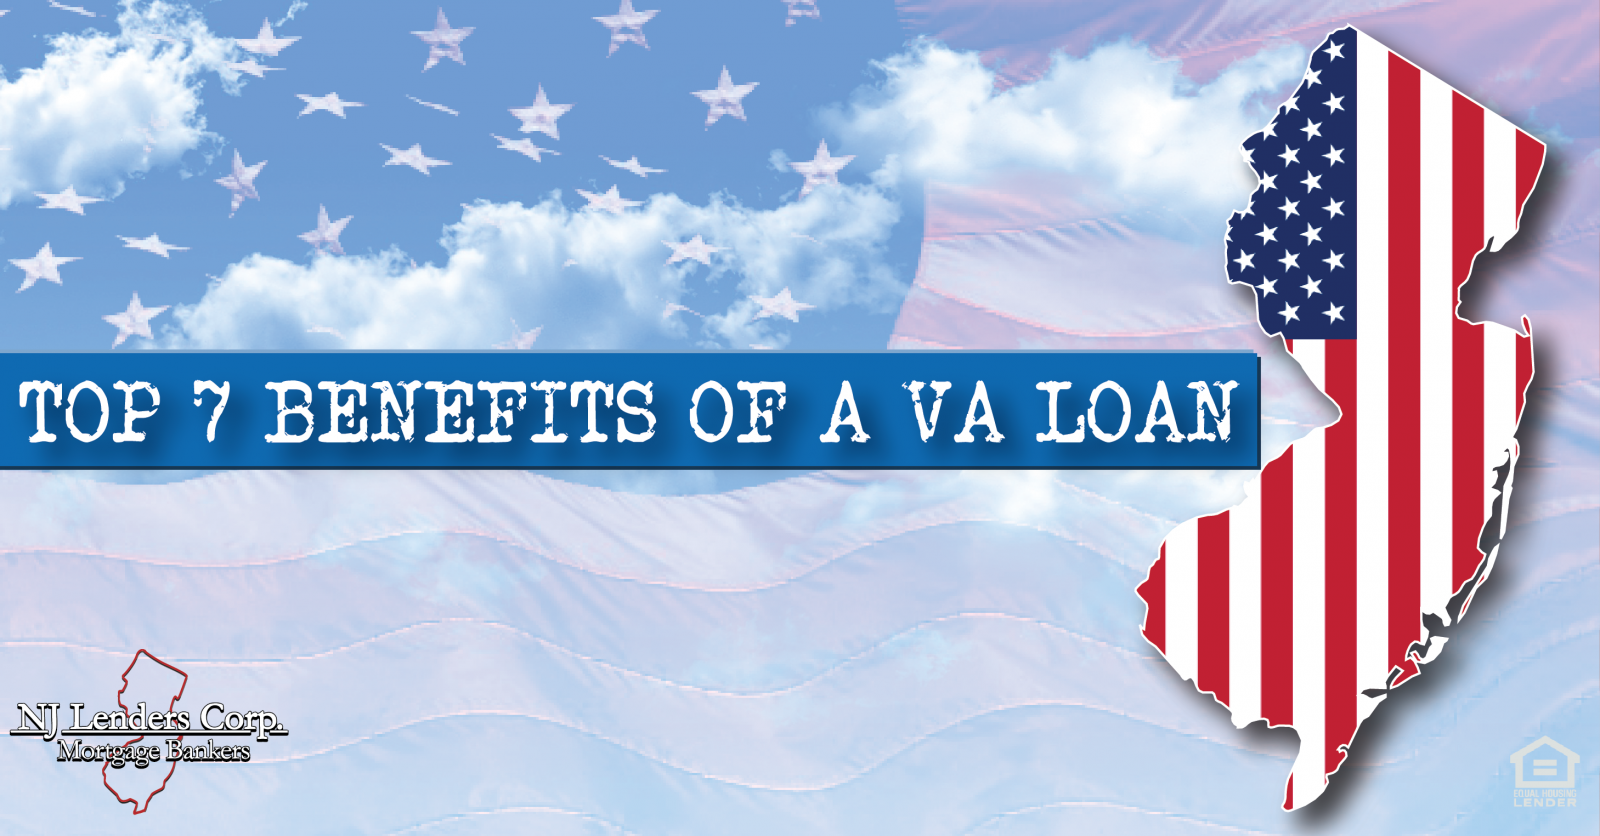 The Top 7 Benefits of a VA Loan